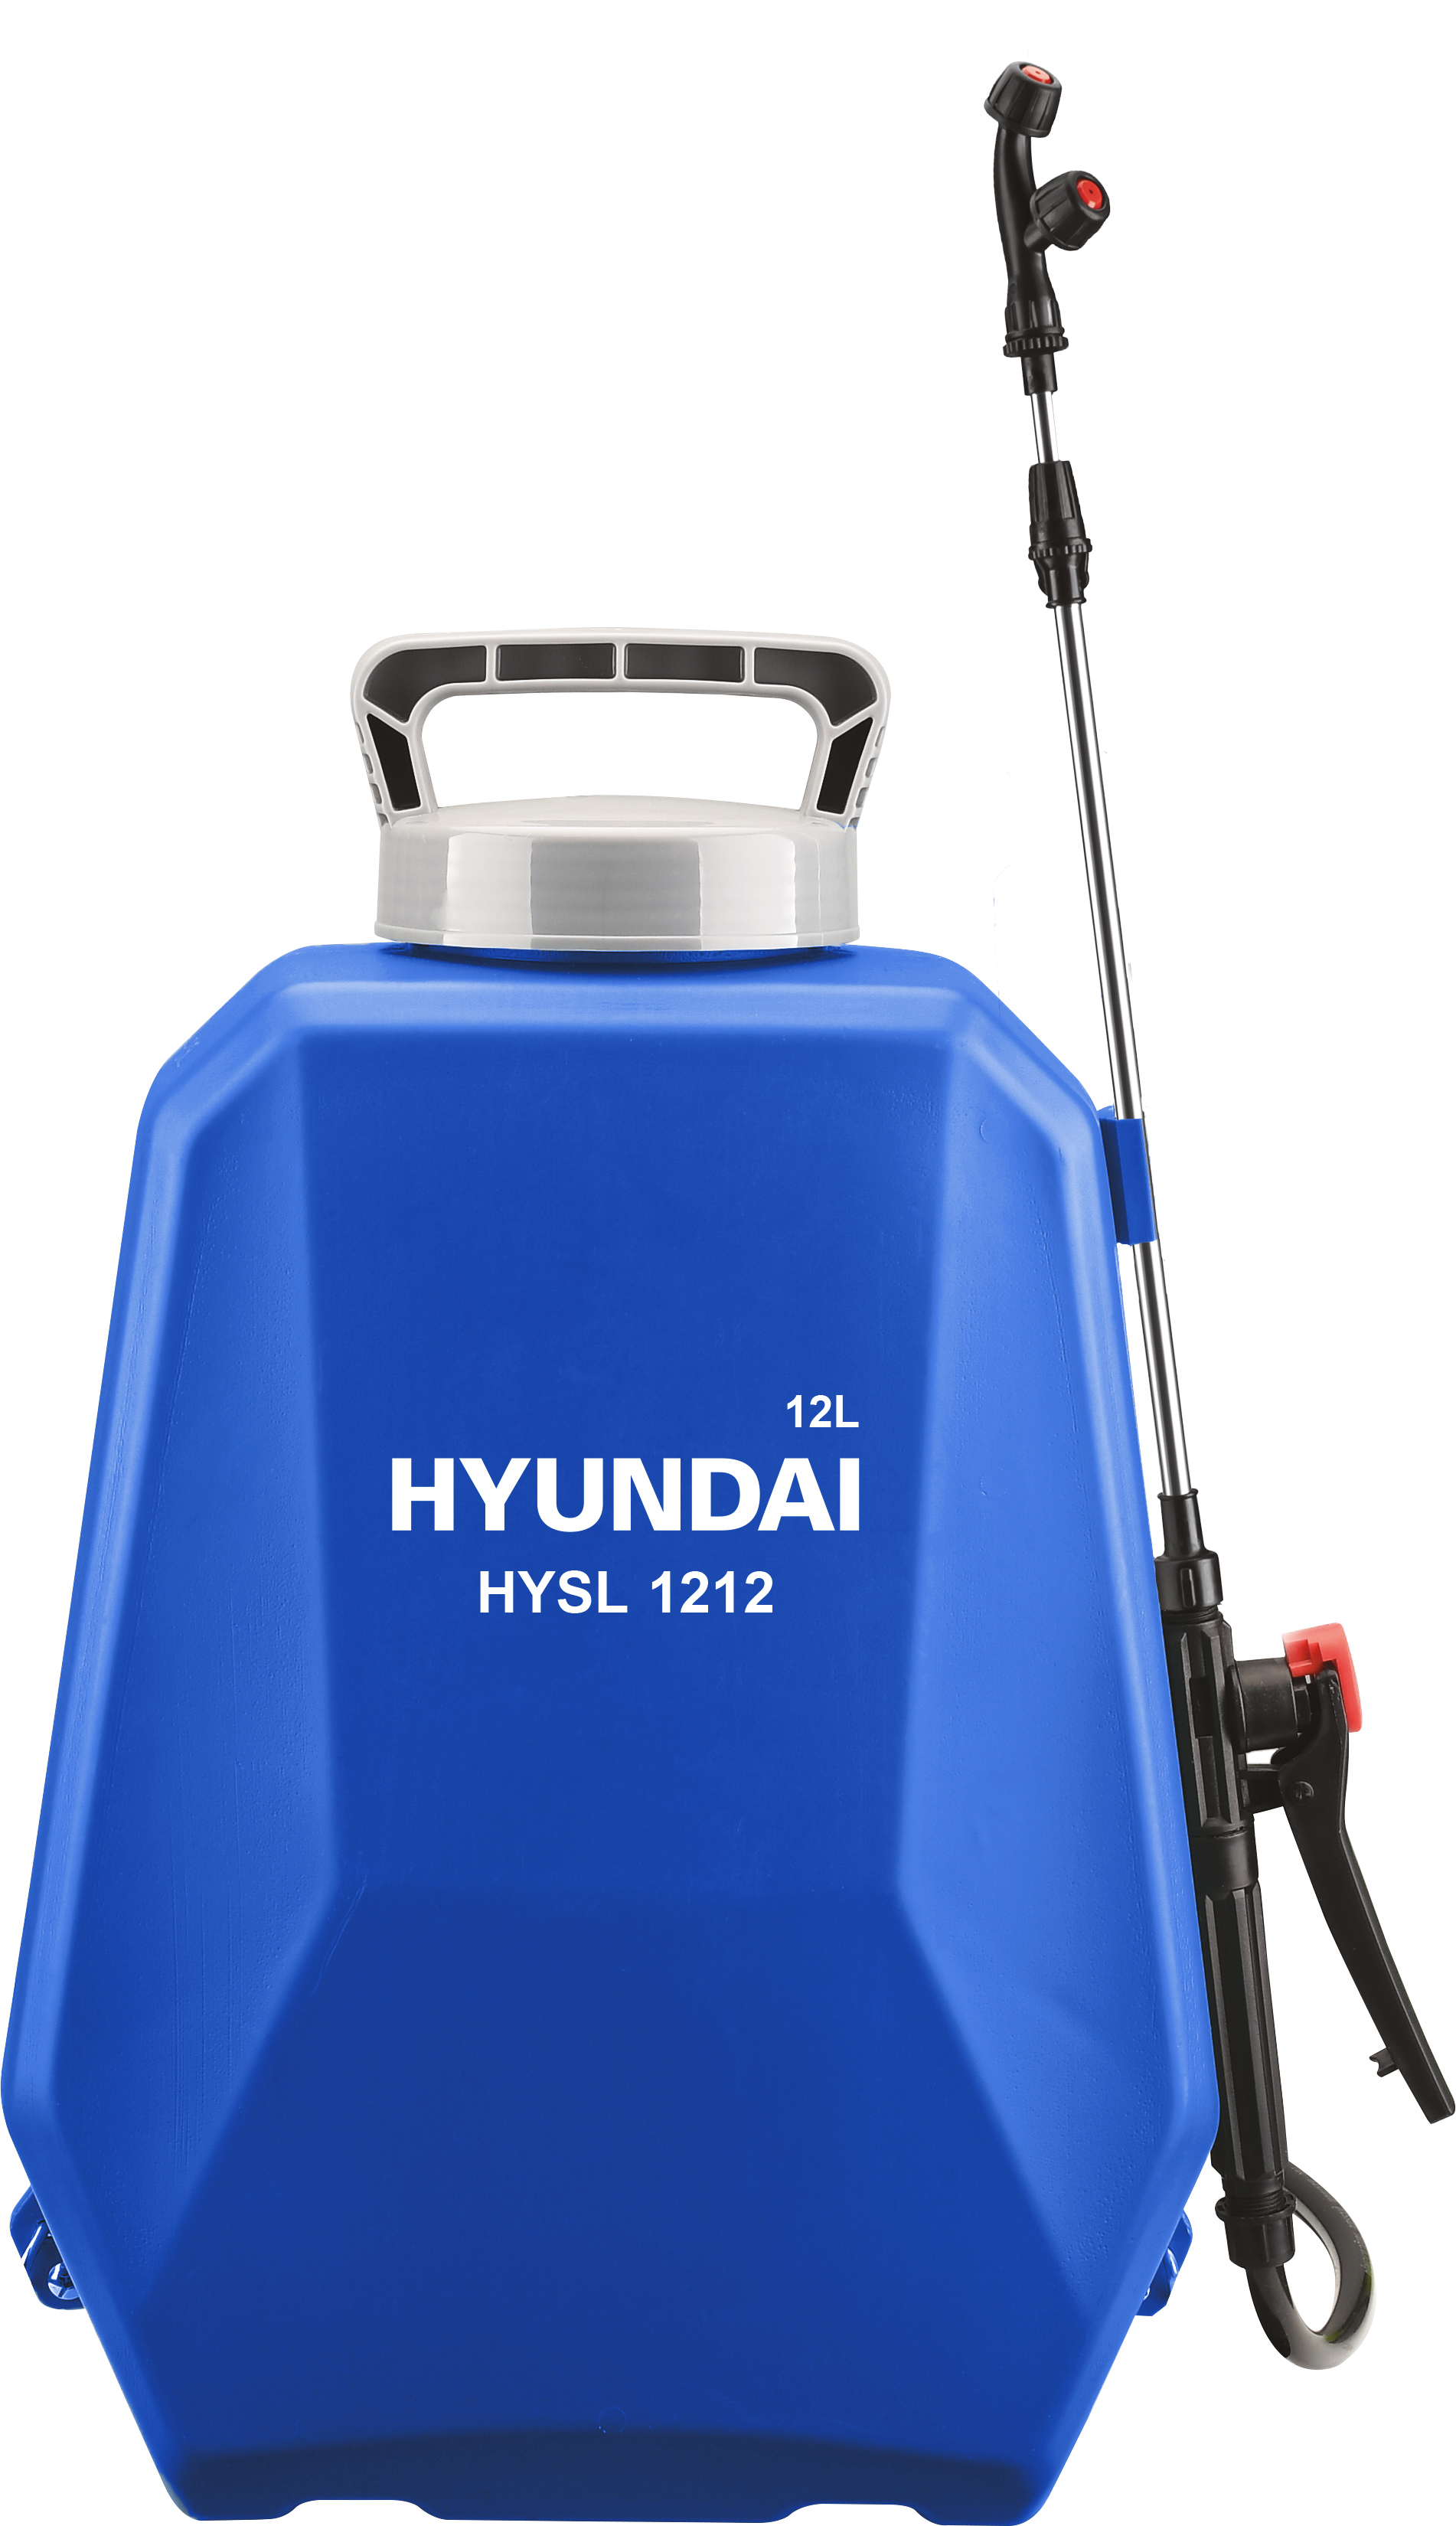 Аккумуляторный опрыскиватель Hyundai HYSL 1212 аккумуляторный опрыскиватель ryobi